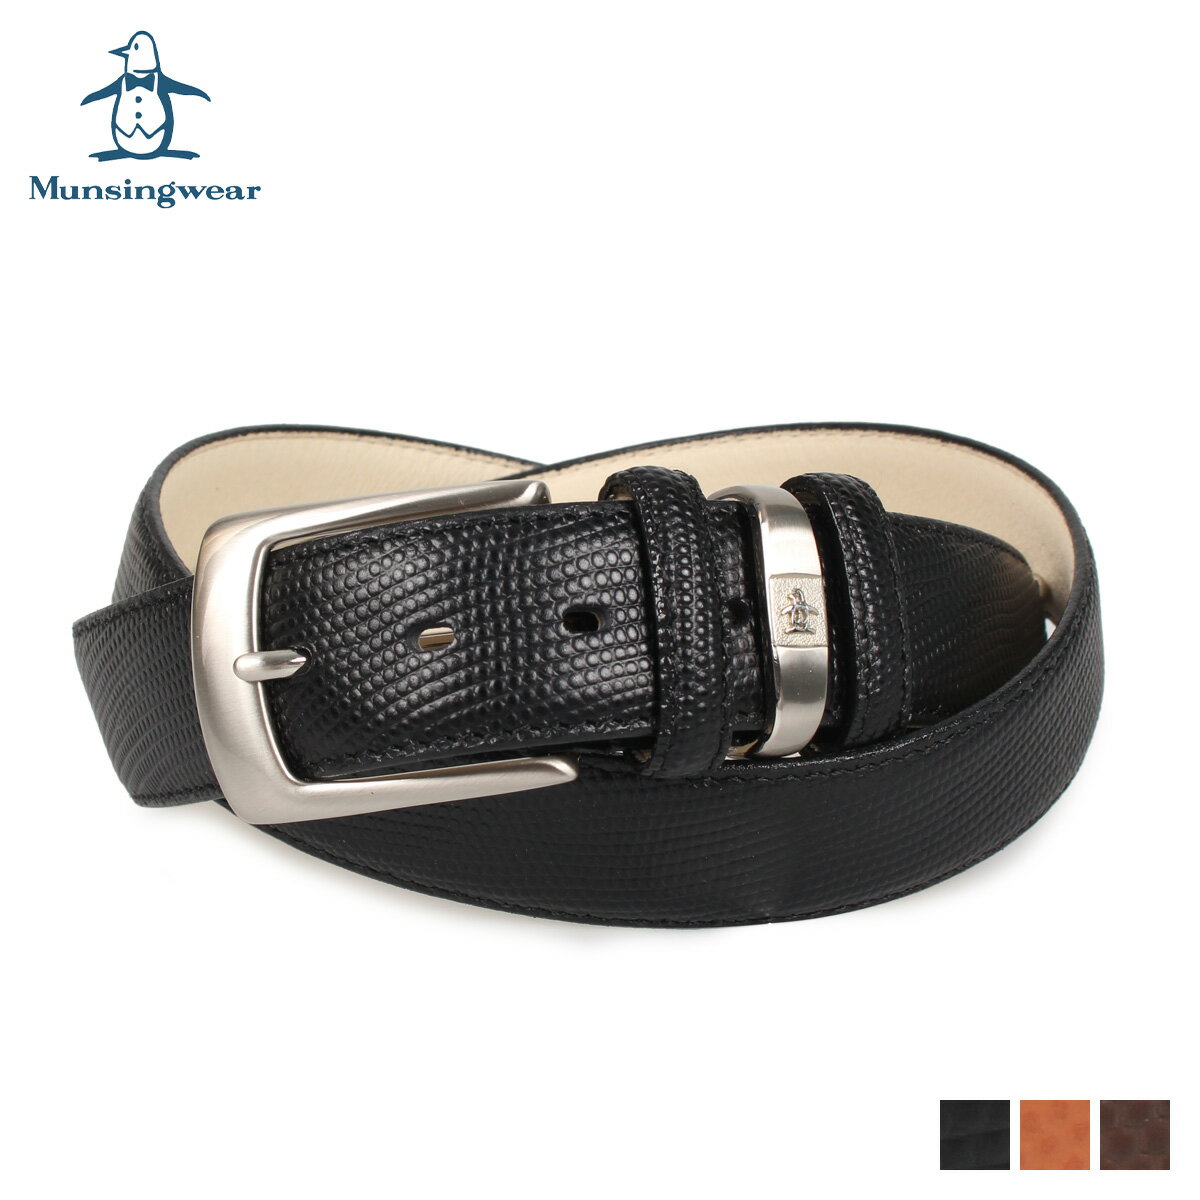 レザーベルト Munsingwear マンシングウェア ベルト レザーベルト メンズ 本革 バックル LEATHER BELT ブラック ブラウン チョコ 黒 MU-1520